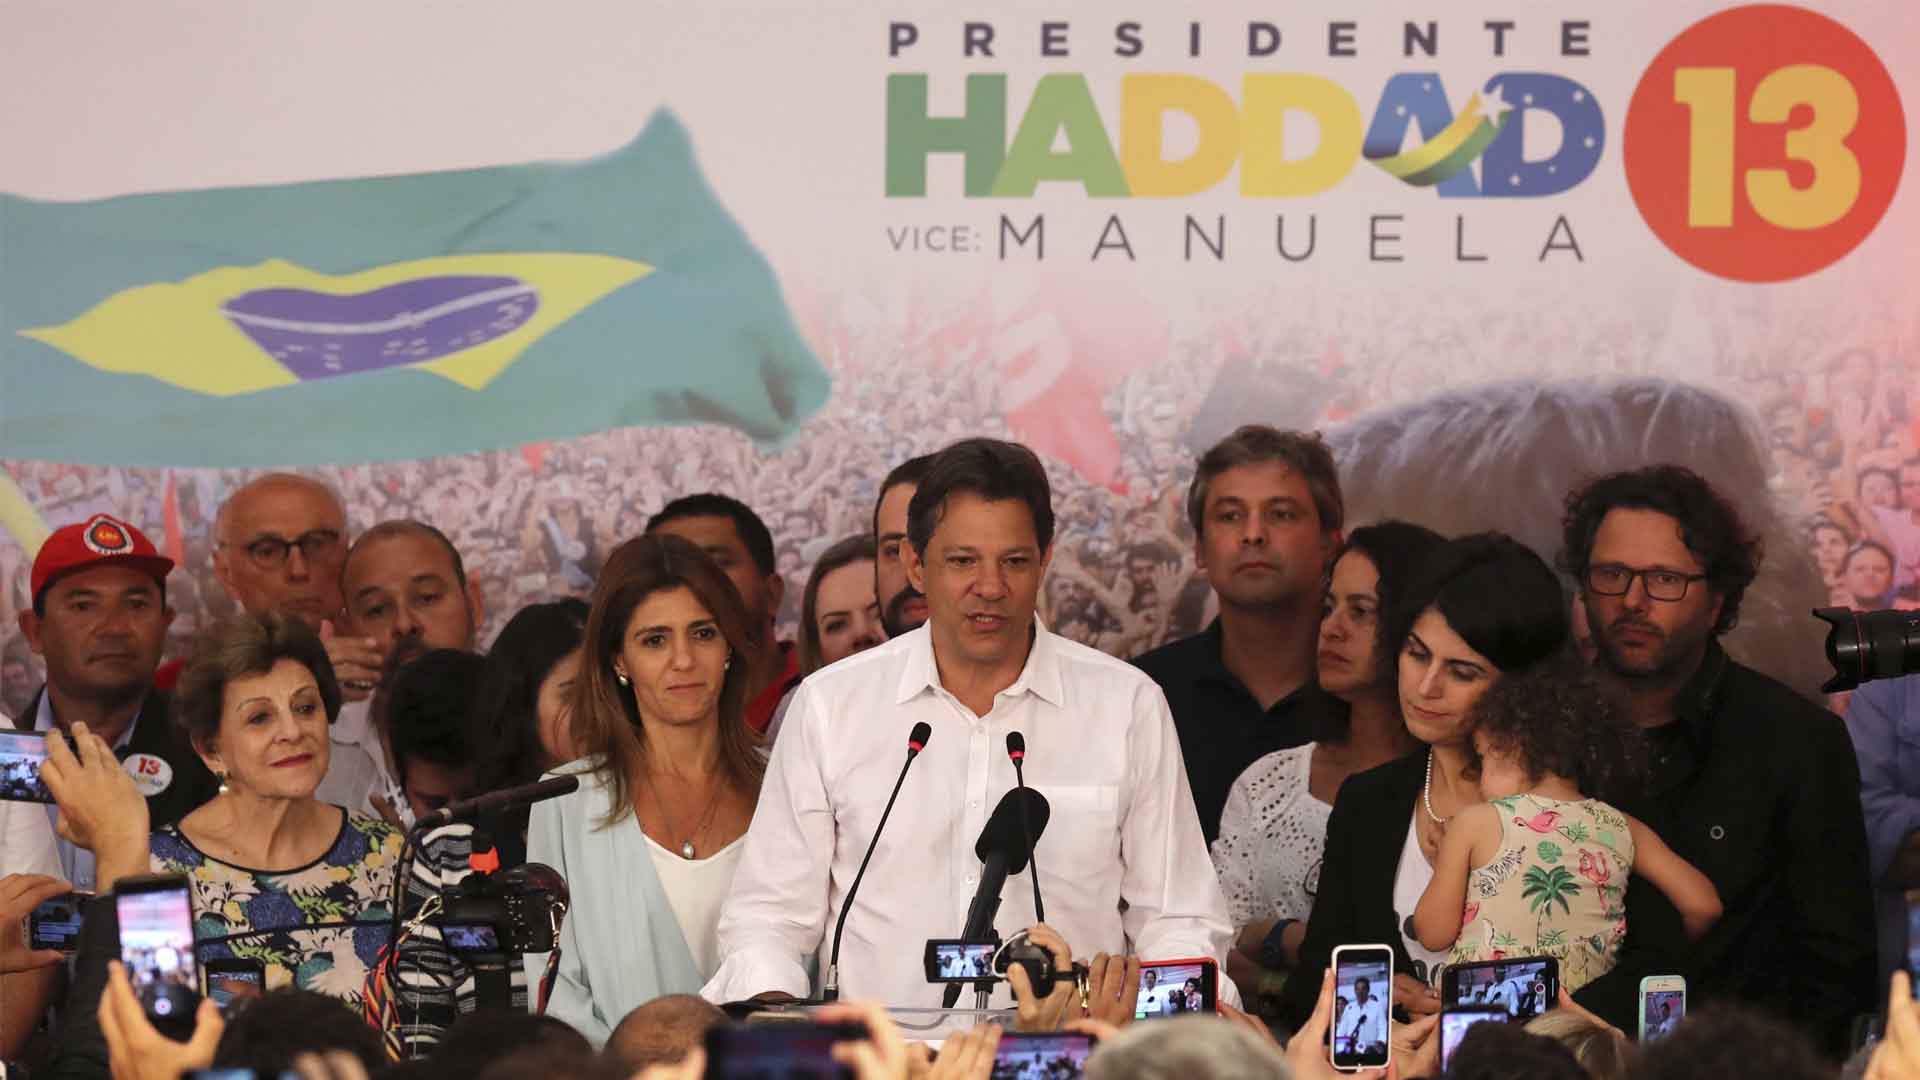 Abren juicio por corrupción contra Haddad, el candidato que sustituyó a Lula